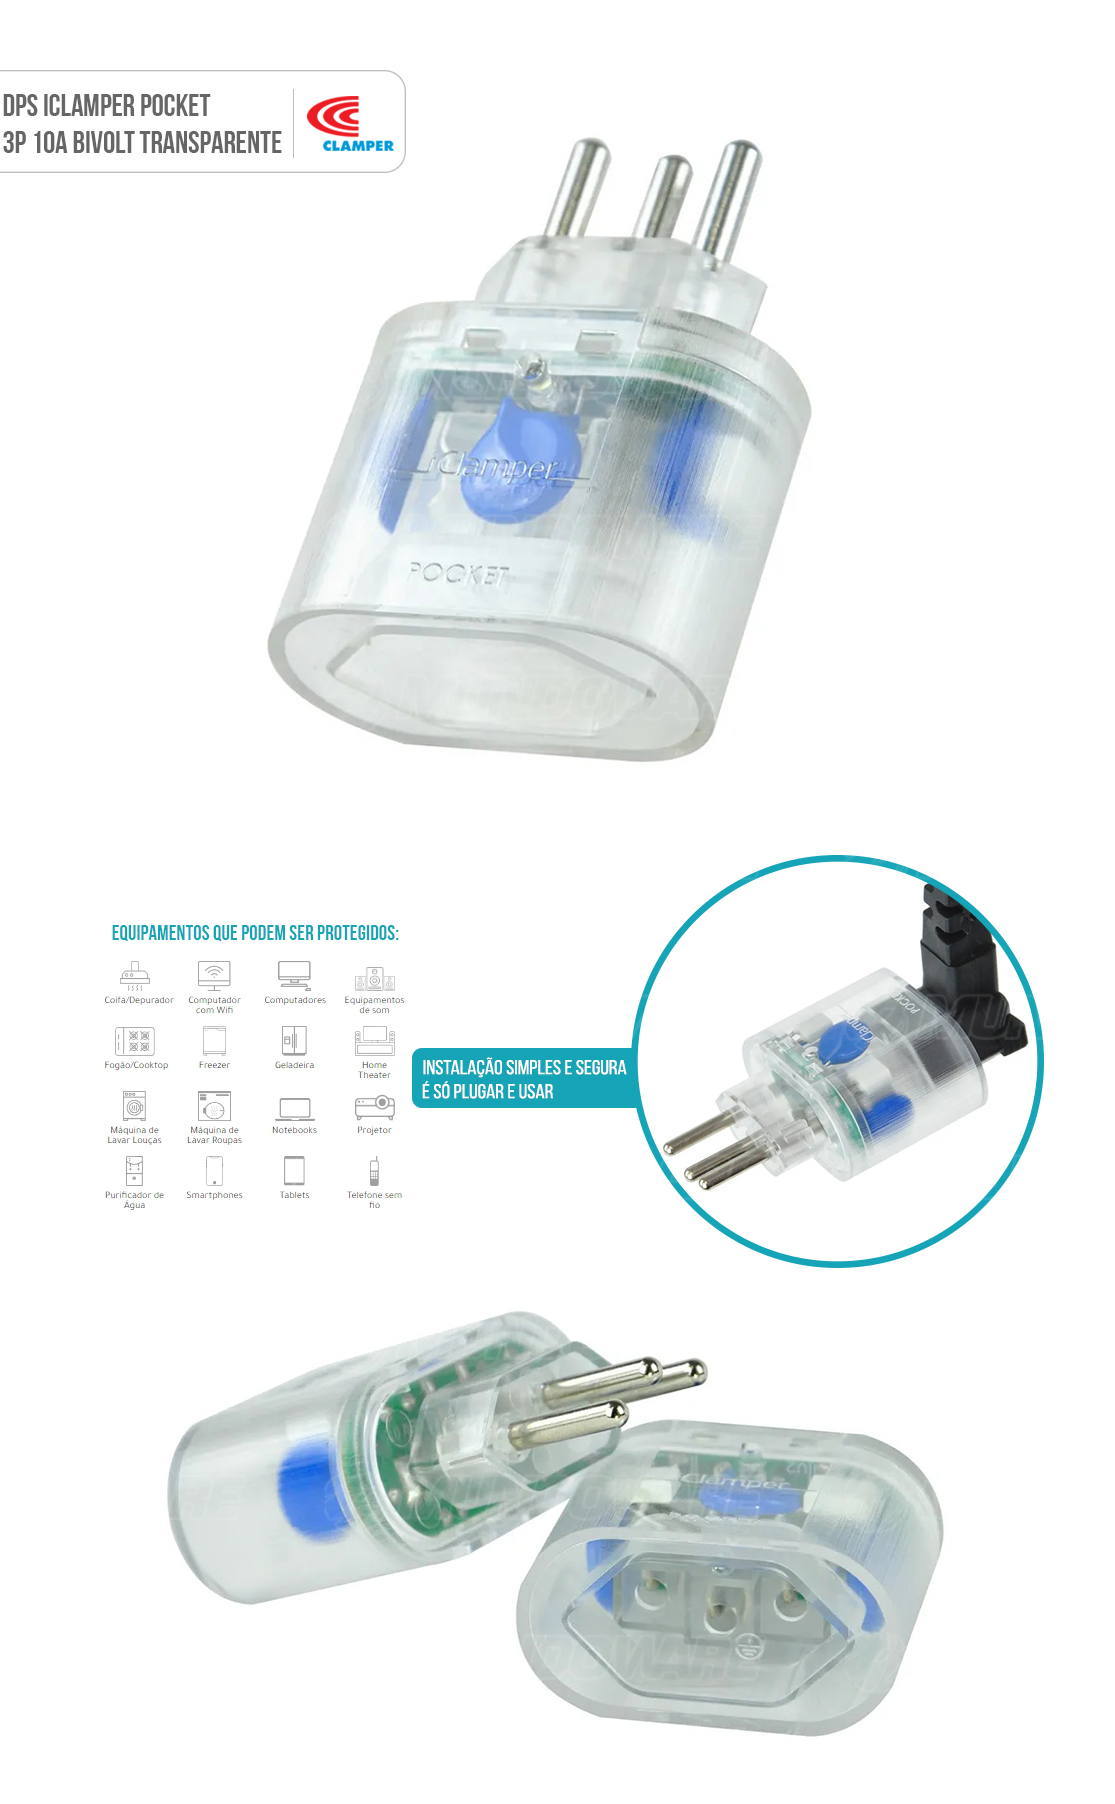 DPS Portátil iClamper Pocket 3 Pinos 10A Proteção contra Surtos Elétricos para Eletroeletrônicos Clamper 3P Transparente